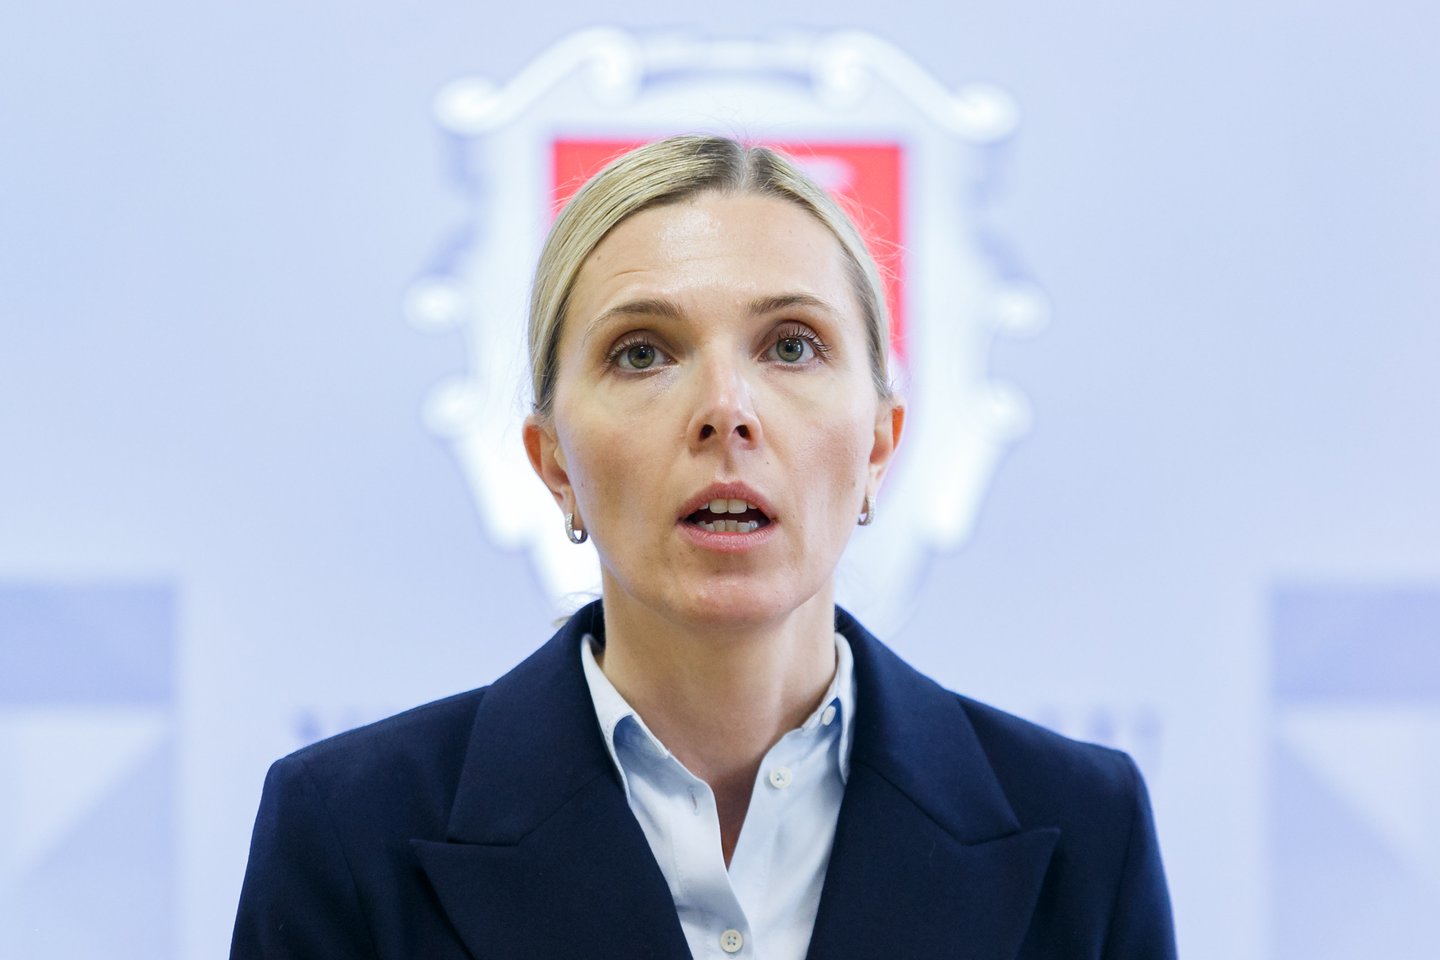   Vidaus reikalų ministrė Agnė Bilotaitė.<br> T.Bauro nuotr.